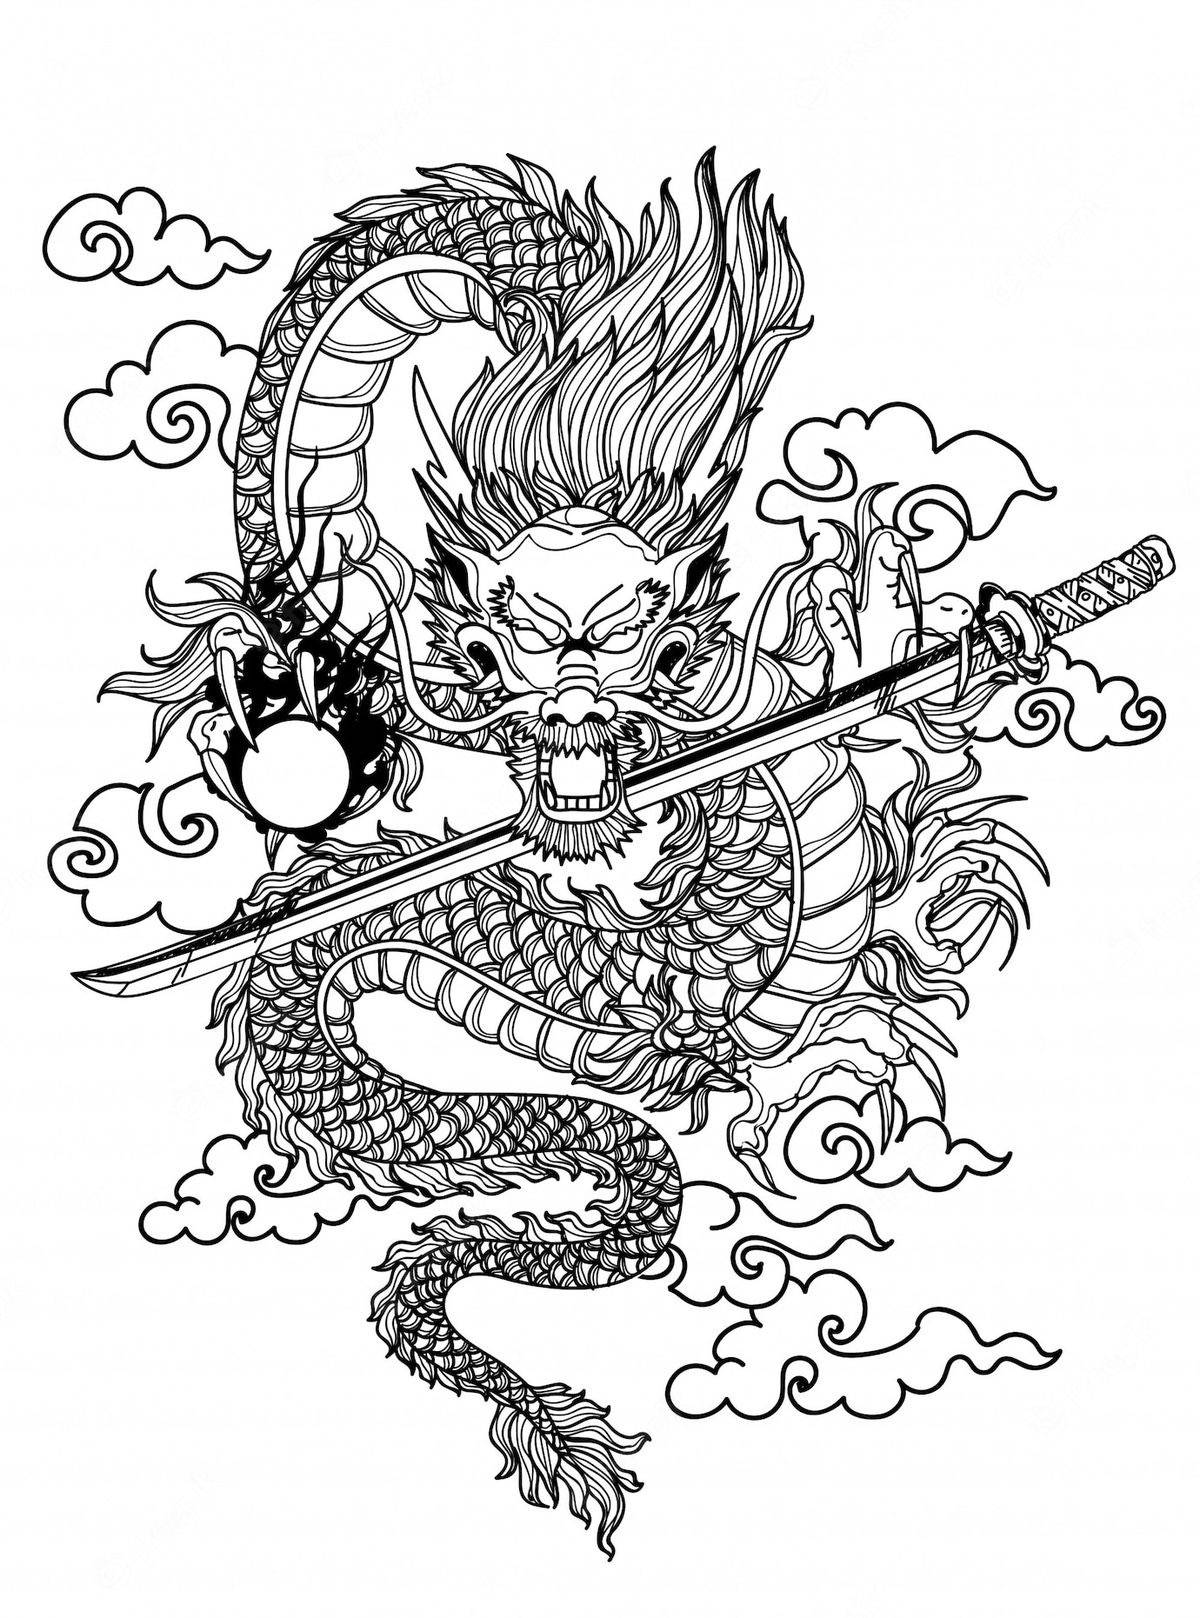 Japanskdrak-tatuering Illustration. Wallpaper